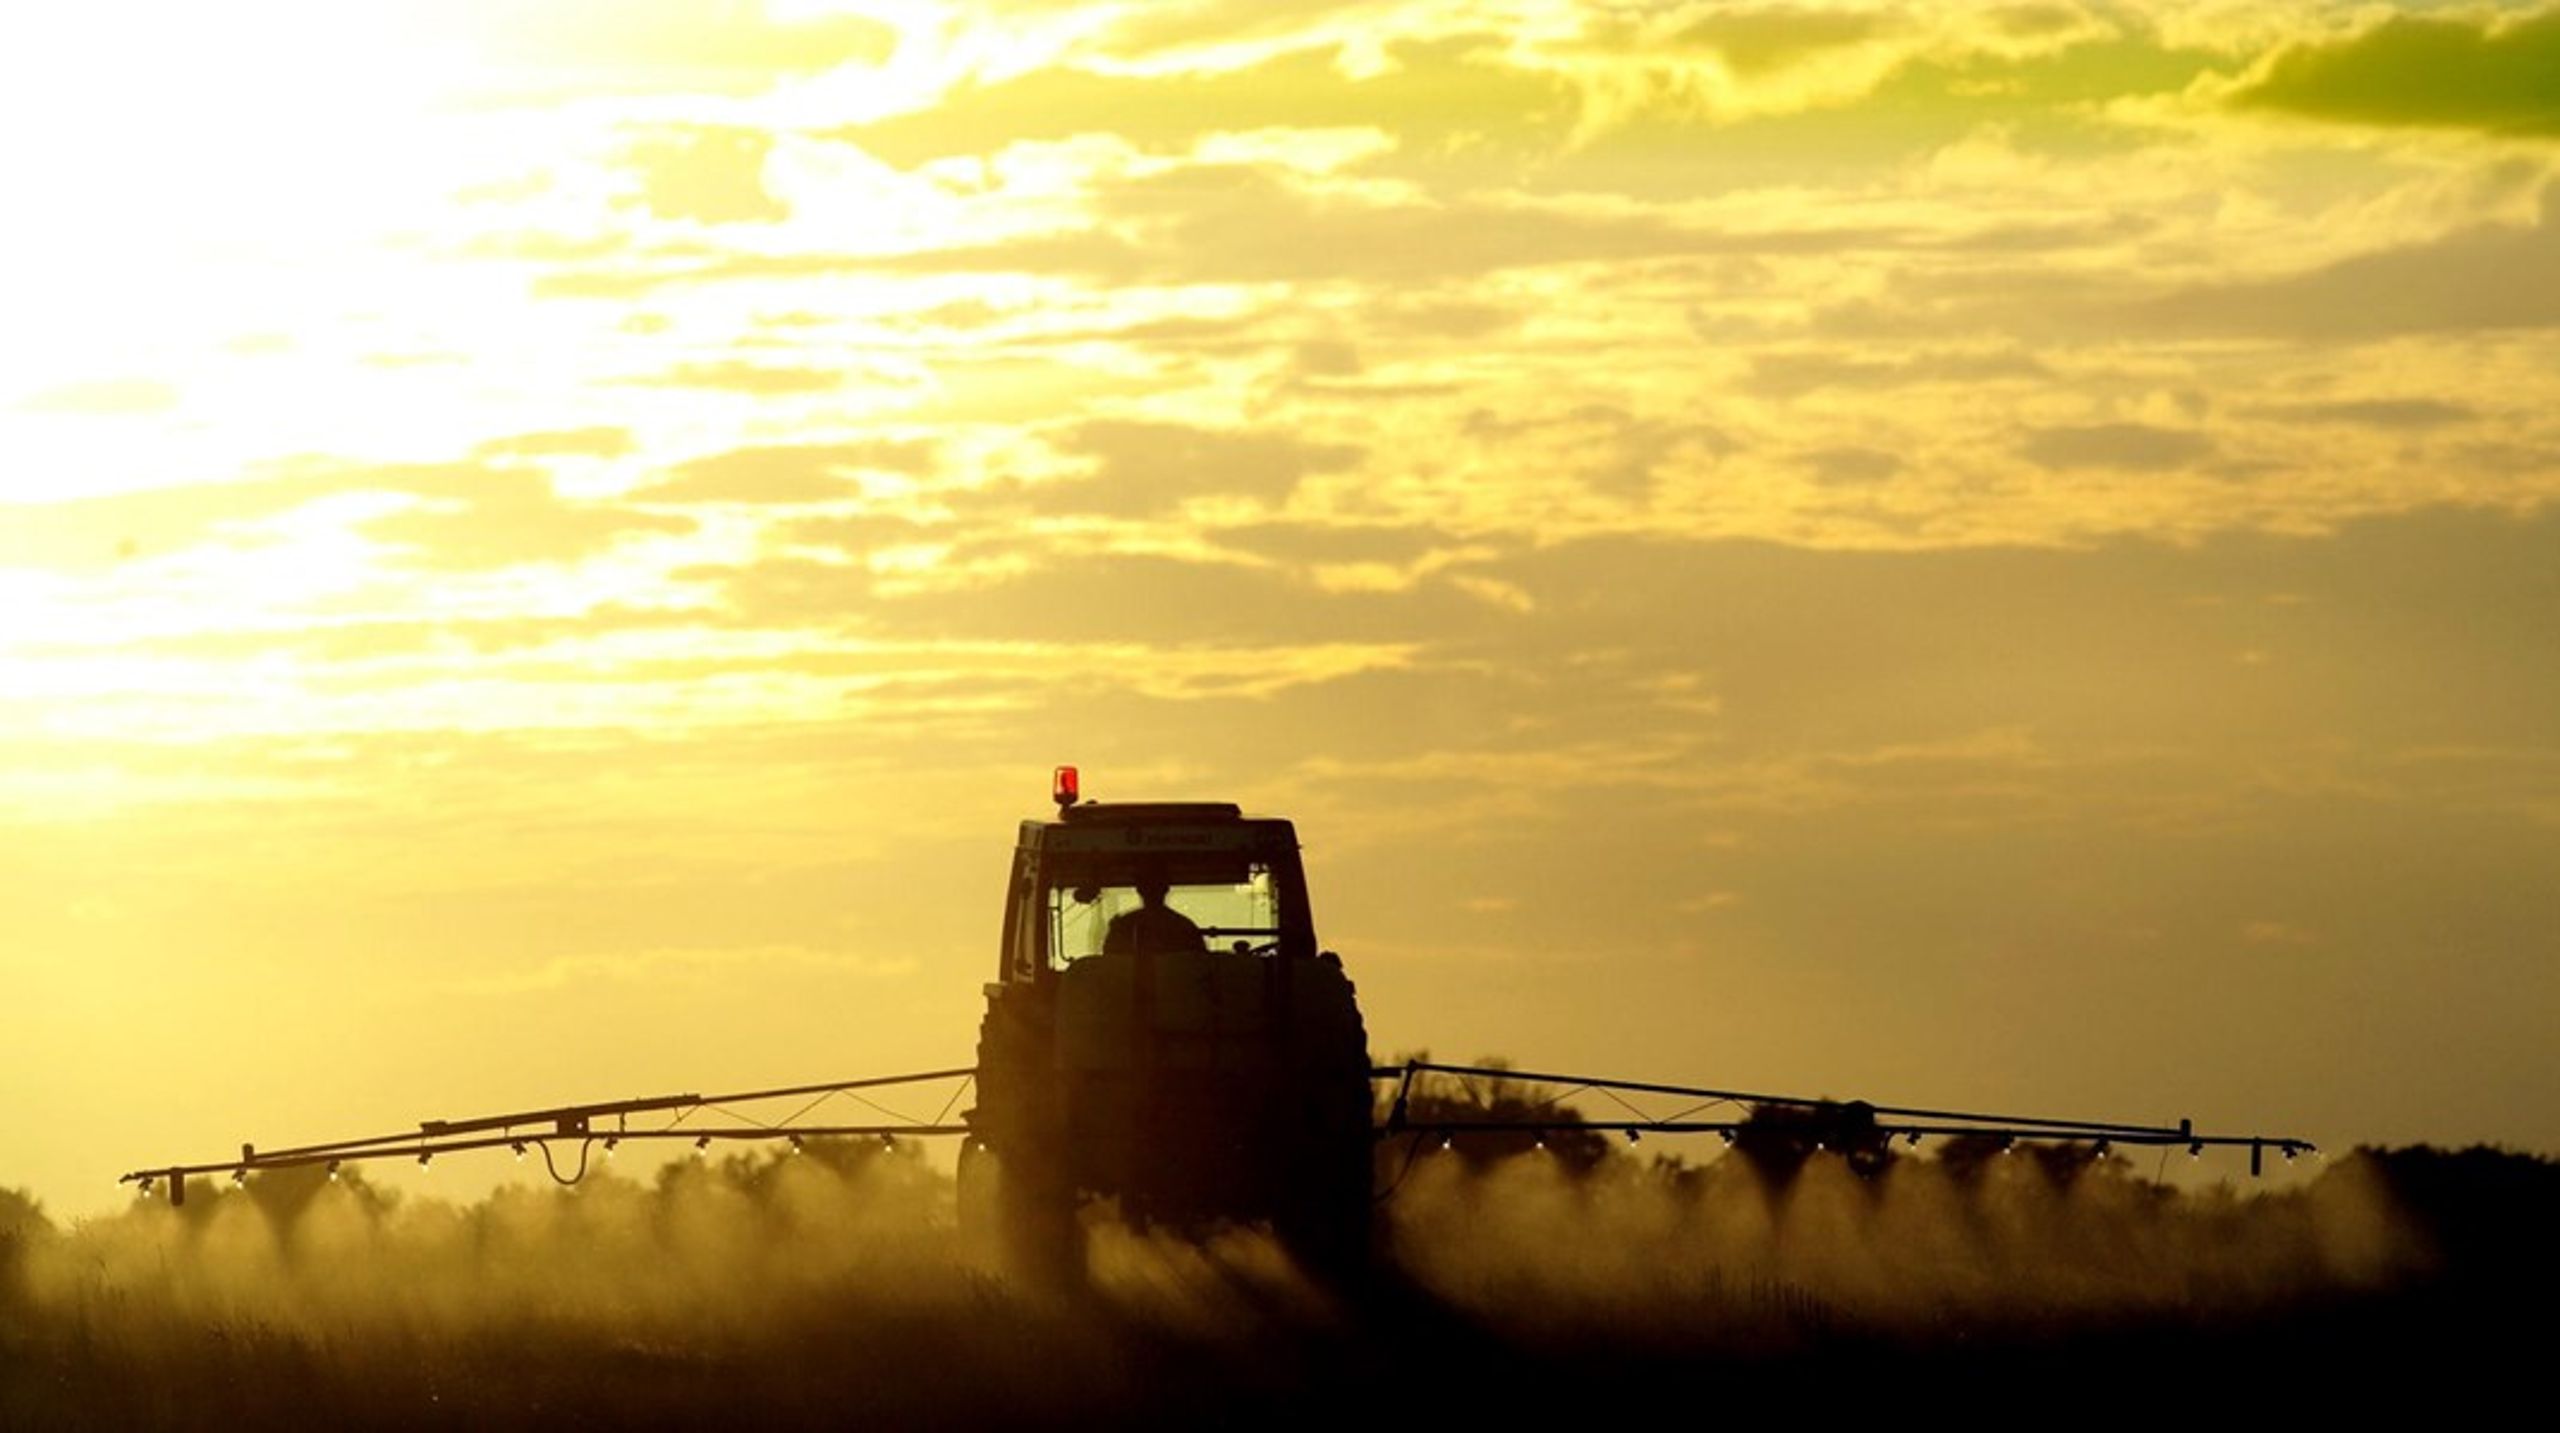 Landbruget bruget langt færre skadelige pesticider end tidligere.